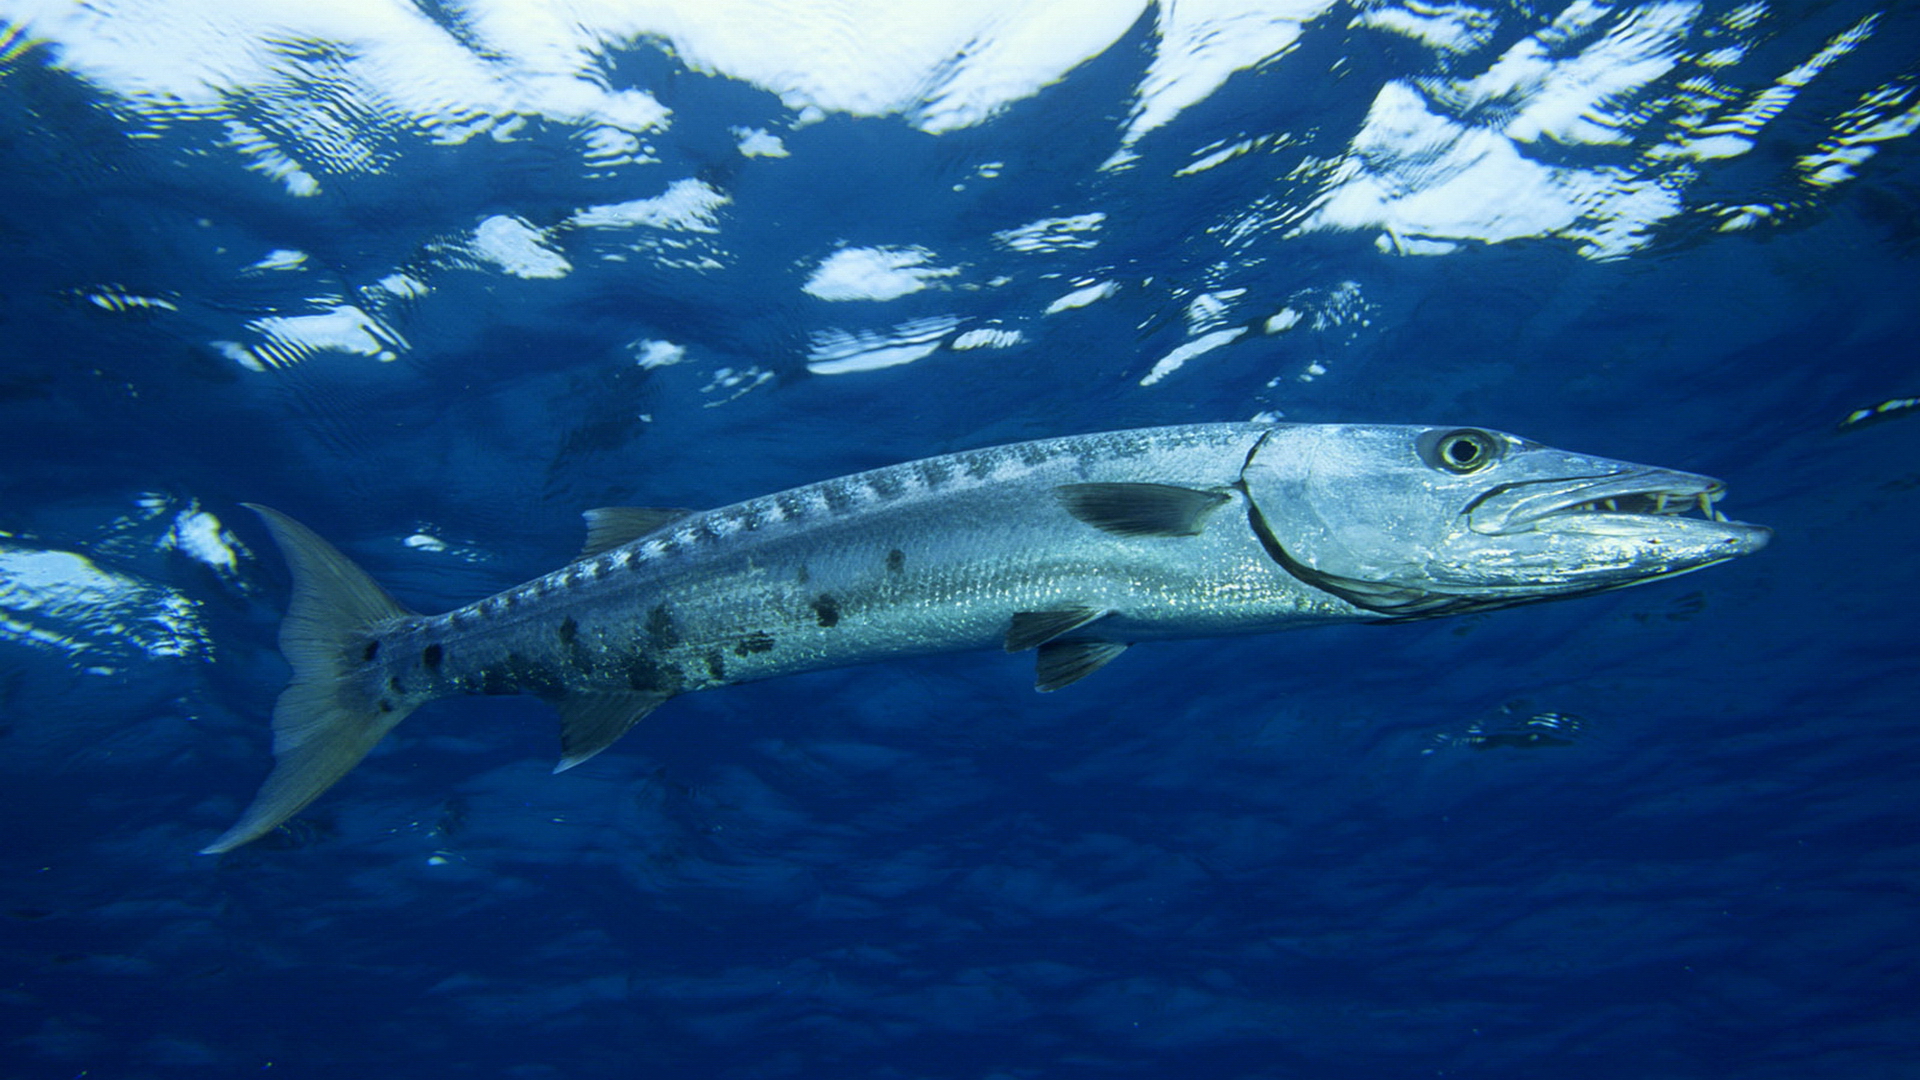 Barracuda swimming in deep blue ocean water.